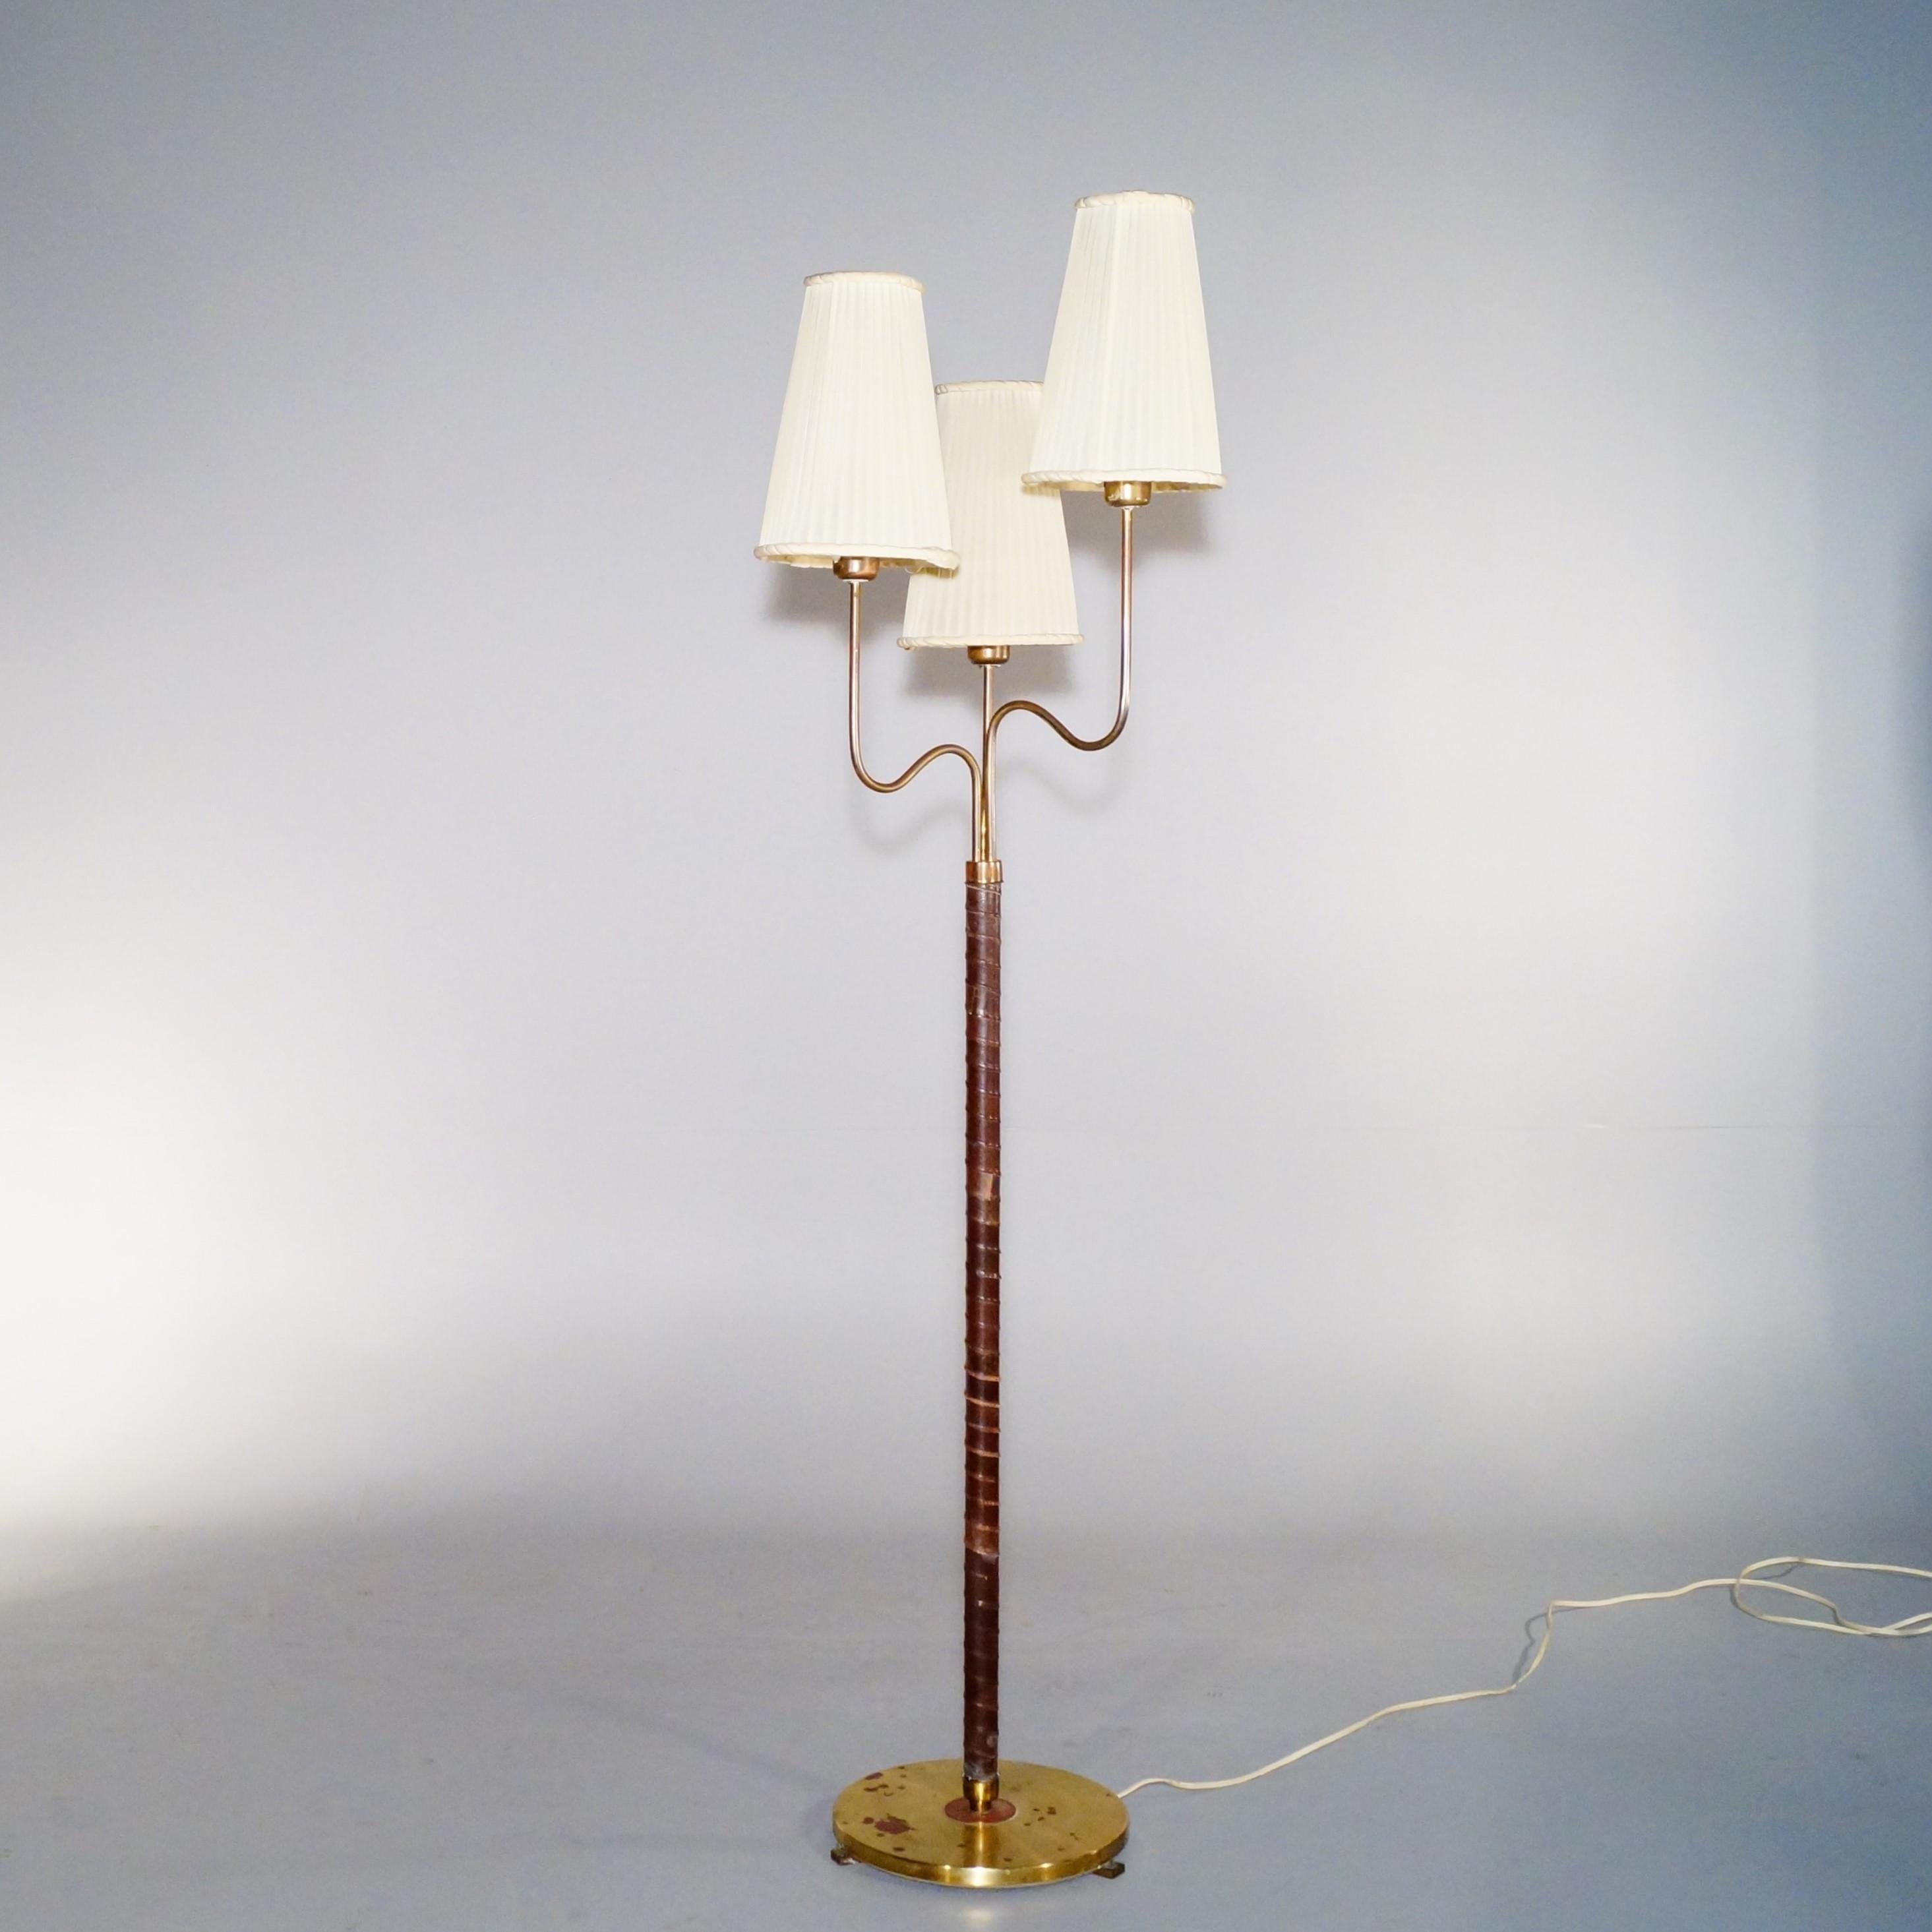 Seltene Stehlampe mit 3 organischen Armen und Lampenschirmen, die jeweils mit E27-Fassungen ausgestattet sind, entworfen von Hans Bergström und hergestellt von ASEA im Jahr 1946. Die Abmessungen beziehen sich auf die Stehleuchte mit Lampenschirmen.